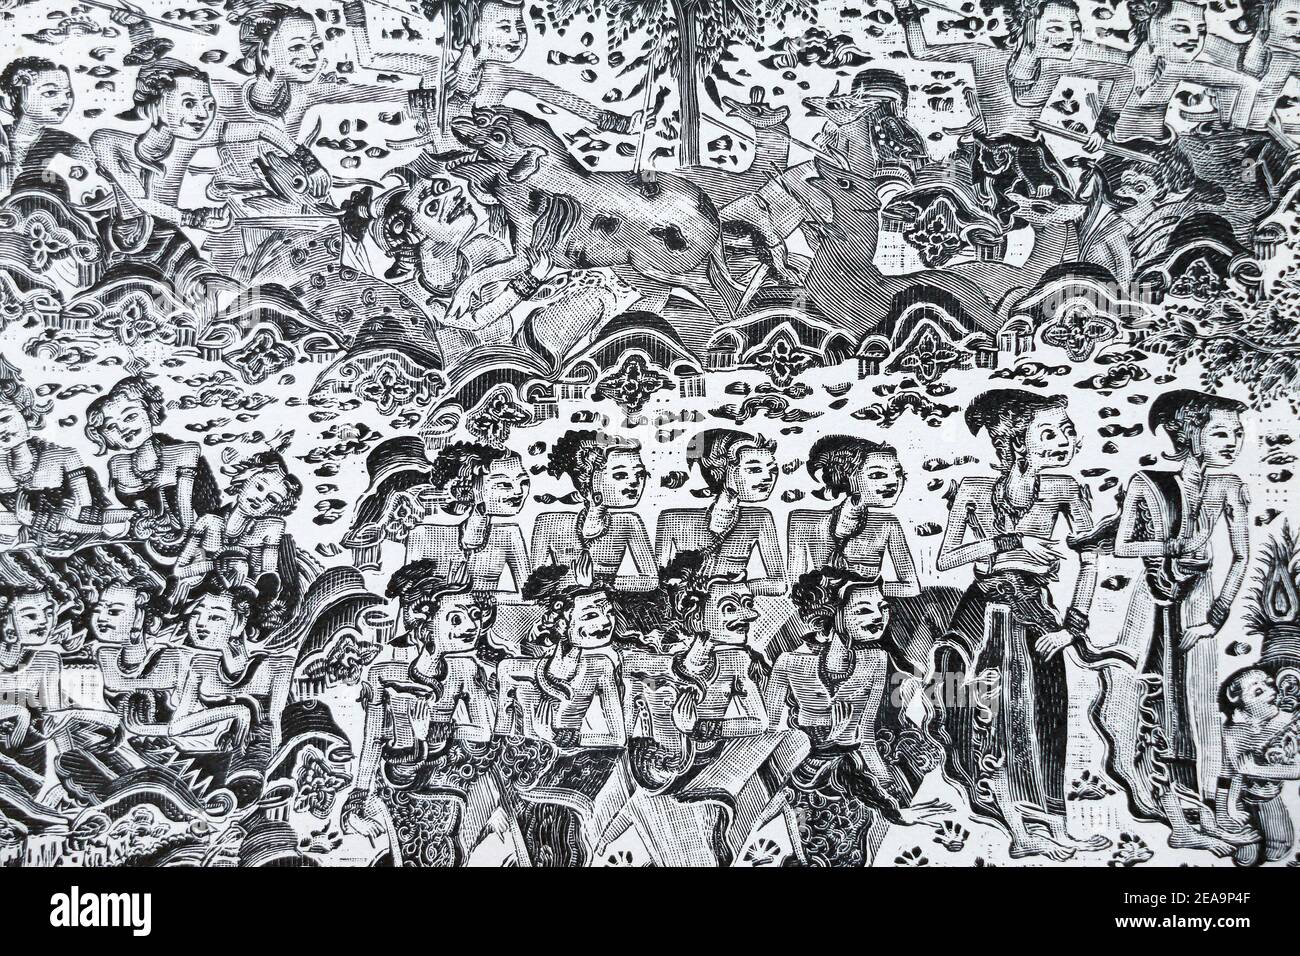 Images de la mythologie indienne du temple de Klungkung, dans le sud-est de Bali. Gravure du XIXe siècle. Banque D'Images